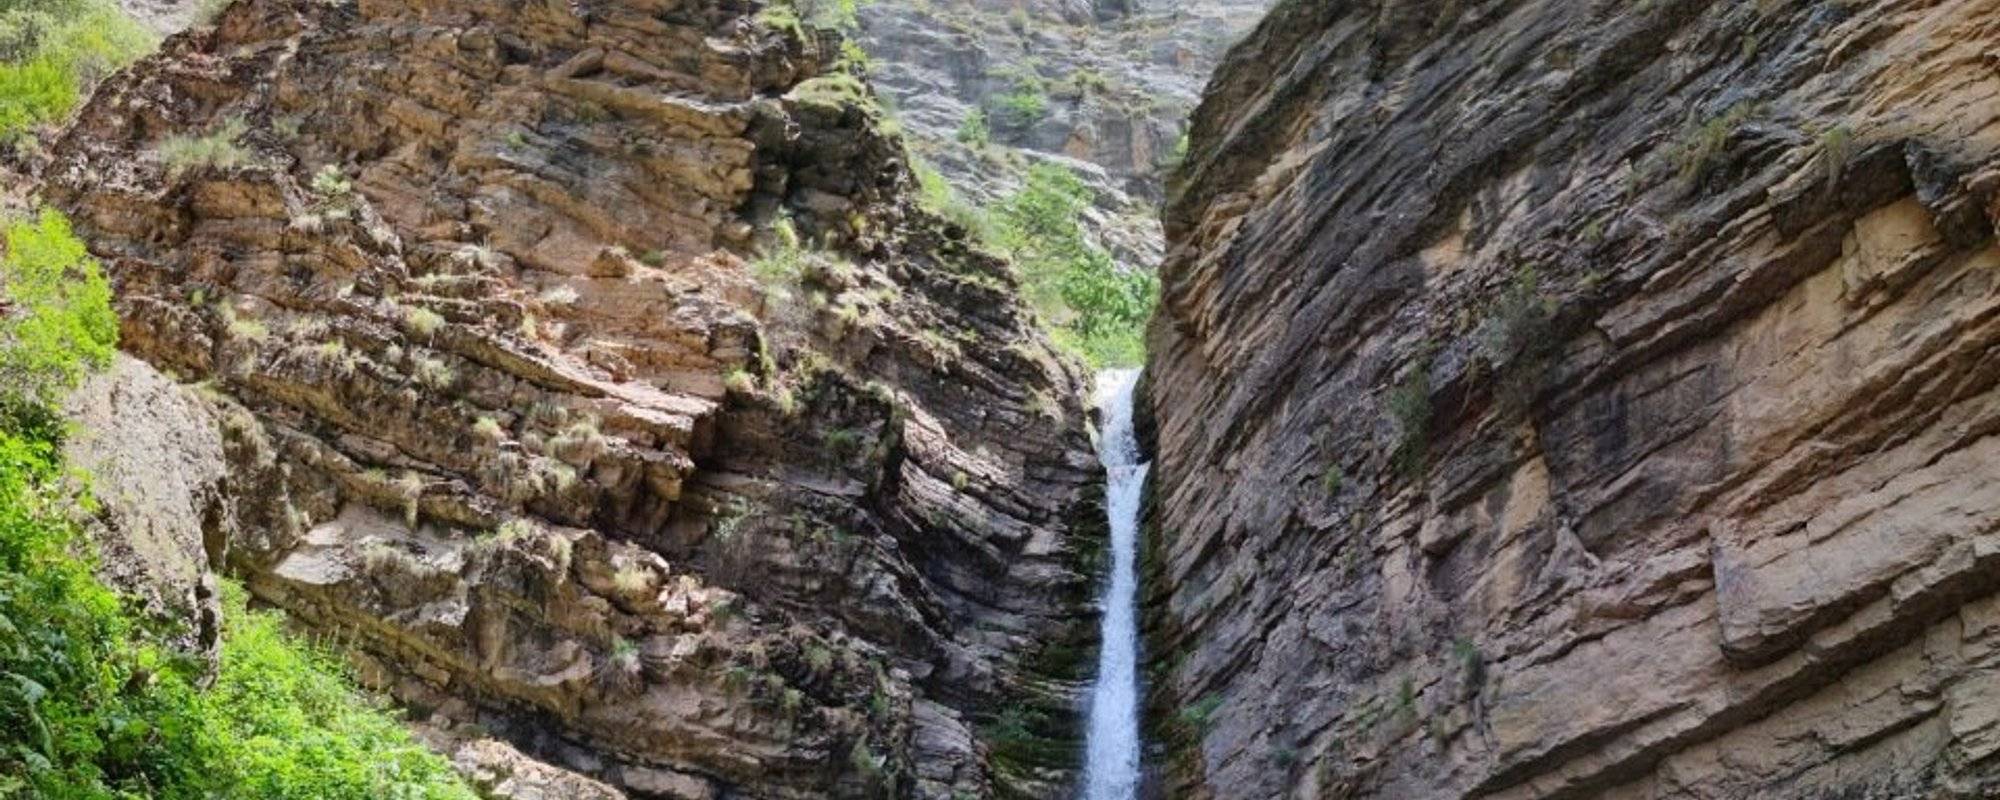 Gorges and waterfalls of Kulos’ya, Uzbekistan